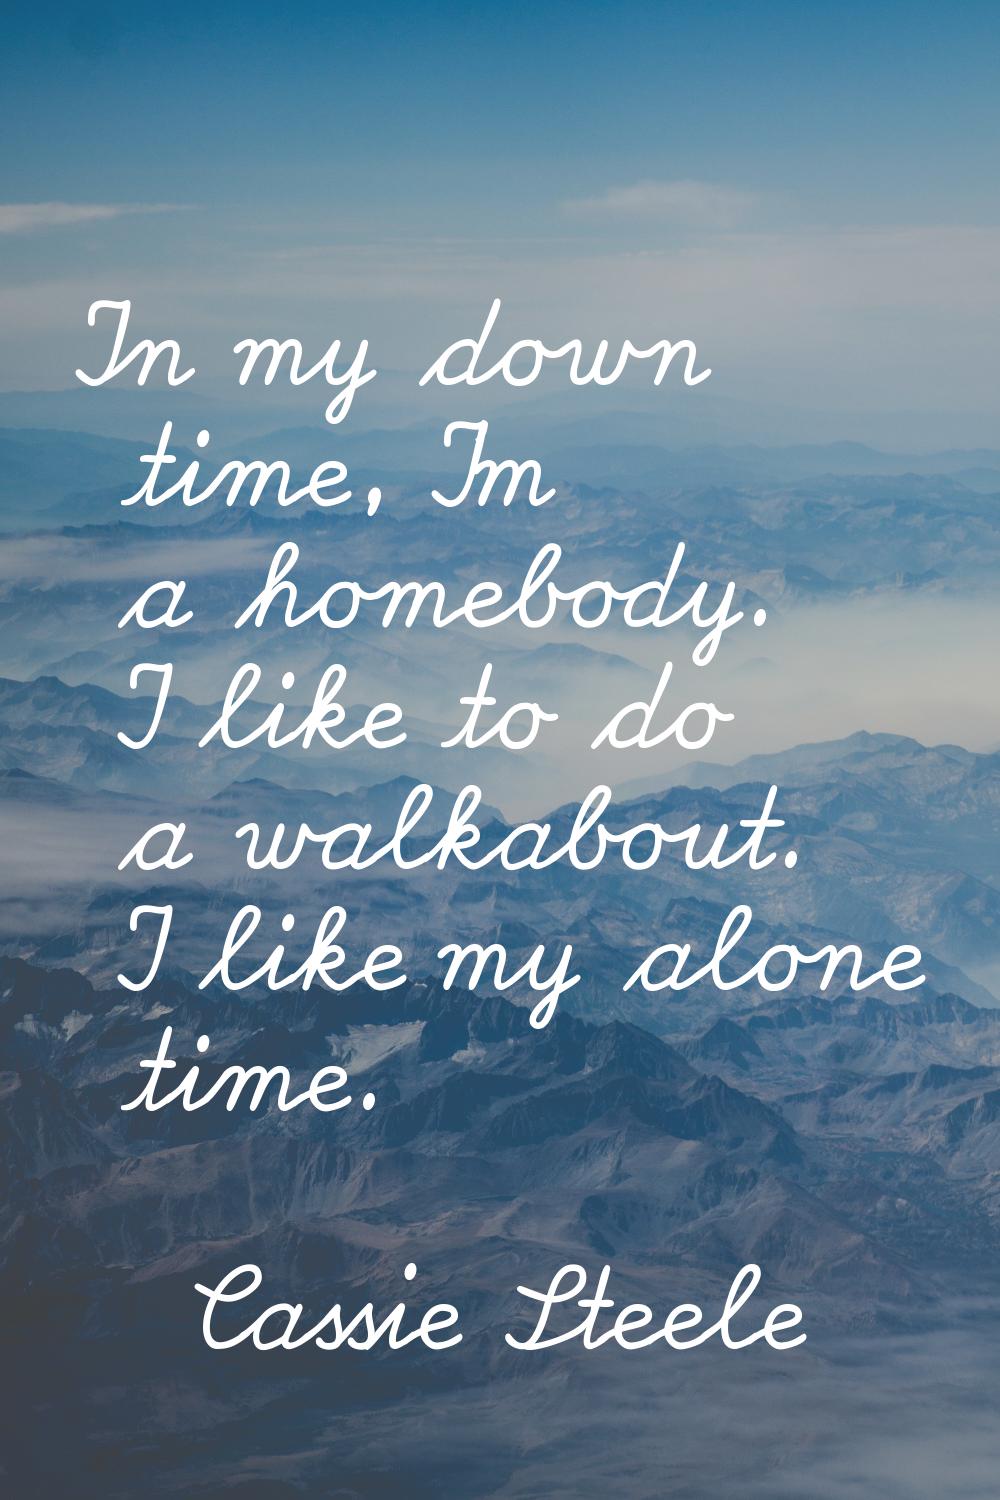 In my down time, I'm a homebody. I like to do a walkabout. I like my alone time.